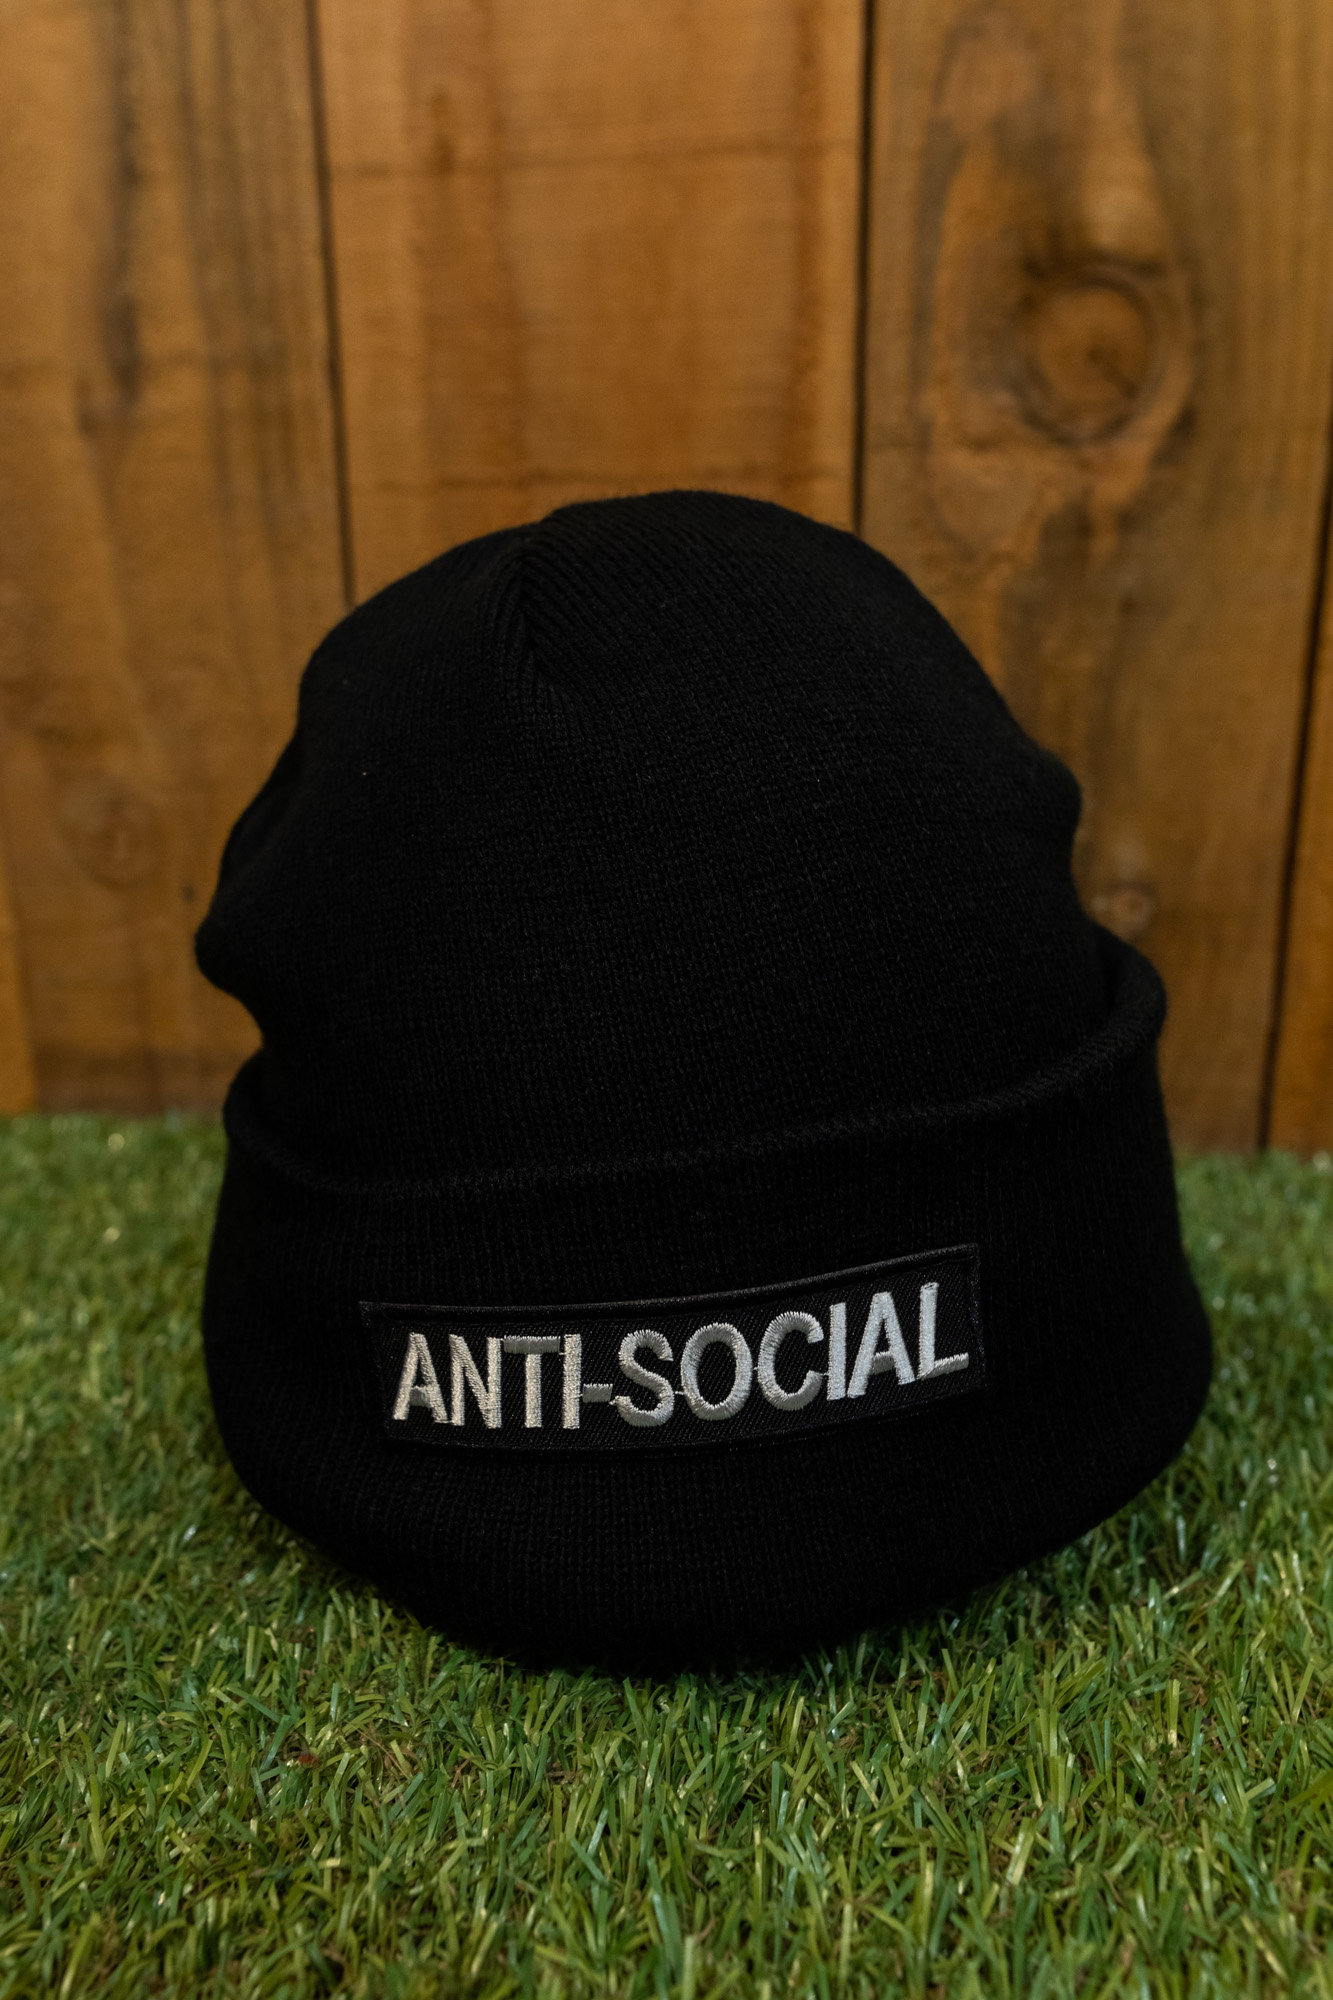 Photo bonnet anti social